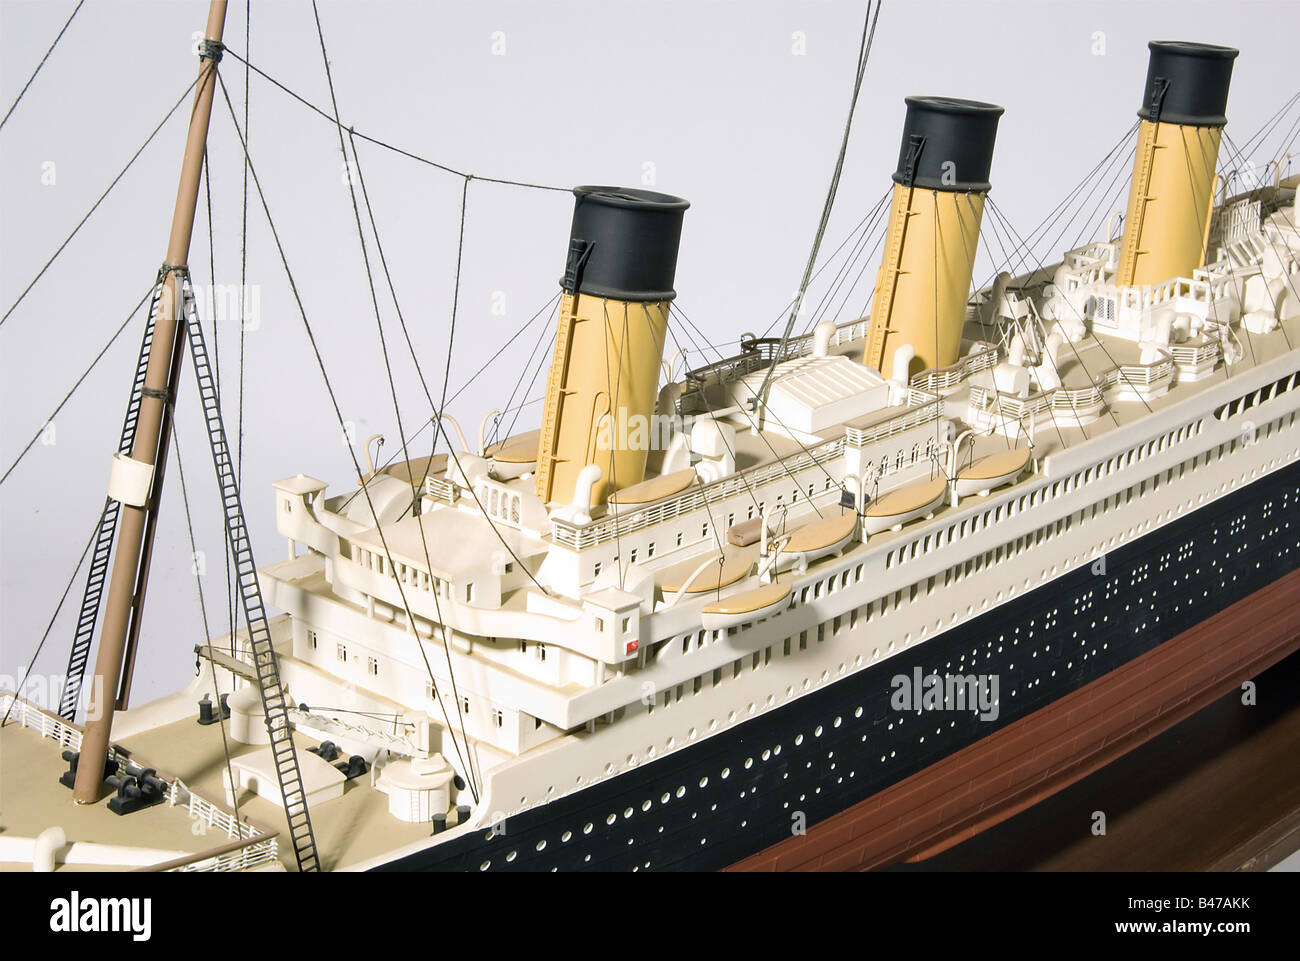 "RMS Titanic", ein Passagierschiff der White Star Line, EIN hochdetailliertes, vollständig manipuliertes Kunststoffmodell auf einem Holzständer. Länge ca. 185 cm. Breite 20 cm. Höhe ca. 65 cm. Der Kiel der Titanic wurde bei Harland & Wolff in Belfast im Jahr 1909 gelegt und das Schiff am 31. Mai 1911 gestartet. Die Titanic, die als unsinkbar galt, wurde durch ihren Zusammenstoß mit einem Eisberg in der Nacht vom 14. Auf den 15. April und den darauf folgenden Verlust mit 1504 der 2208 Menschen an Bord berühmt: Historisch, historisch, 1900er, 1910er, 20. Jahrhundert, Transport, Transport, Objekt, Objekte, Stockfoto